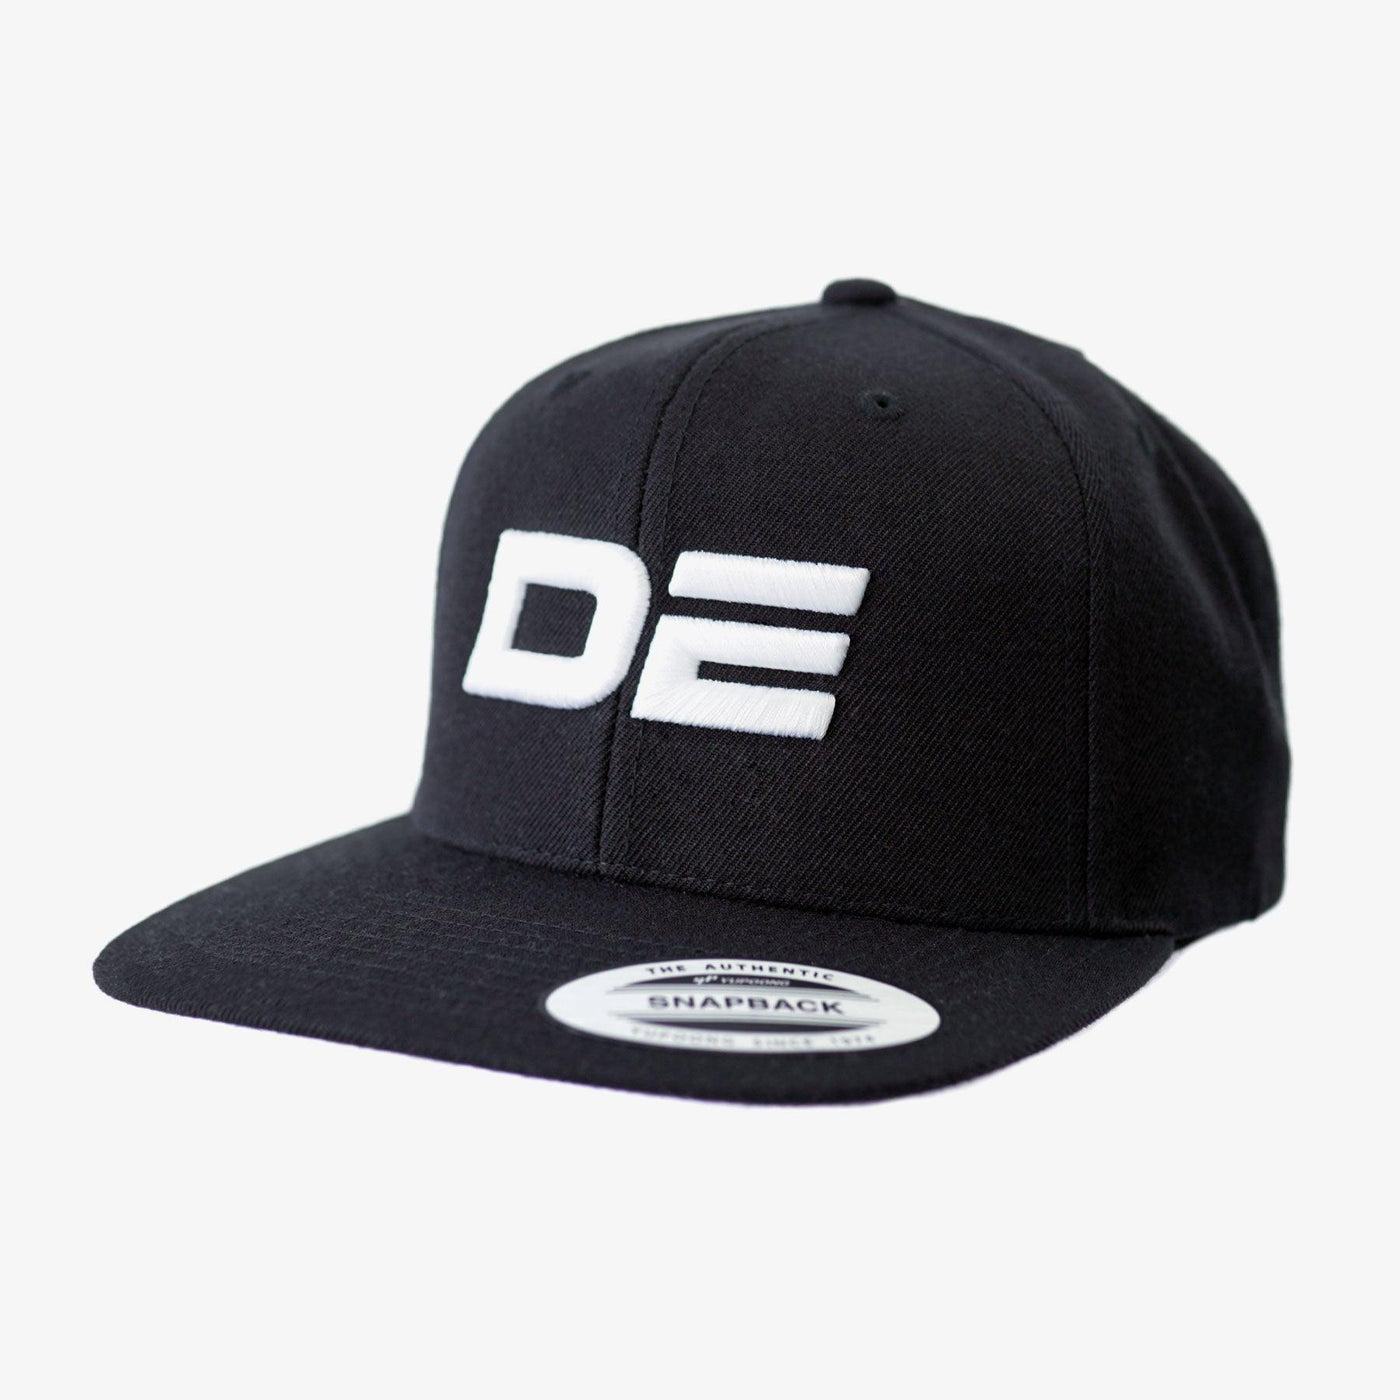 DE Logo - Snapback White/Black Flat Peak Cap